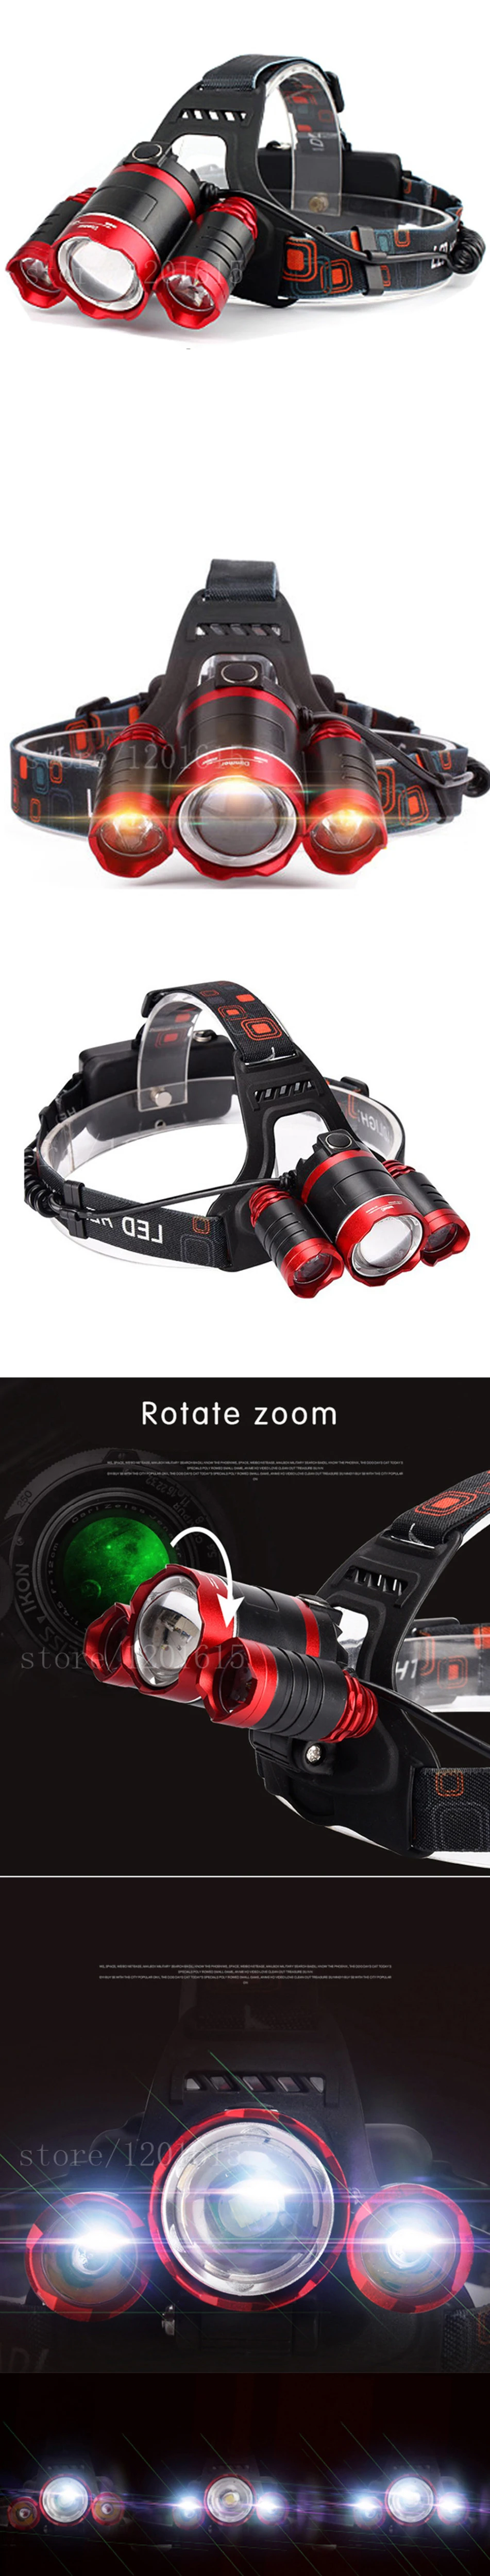 Yunmai USB Мощный светодиодный головной светильник, налобный фонарь, люмен, xml t6+ 2Q5, налобный фонарь, фонарь на 18650 батарейках, охотничий, рыболовный светильник